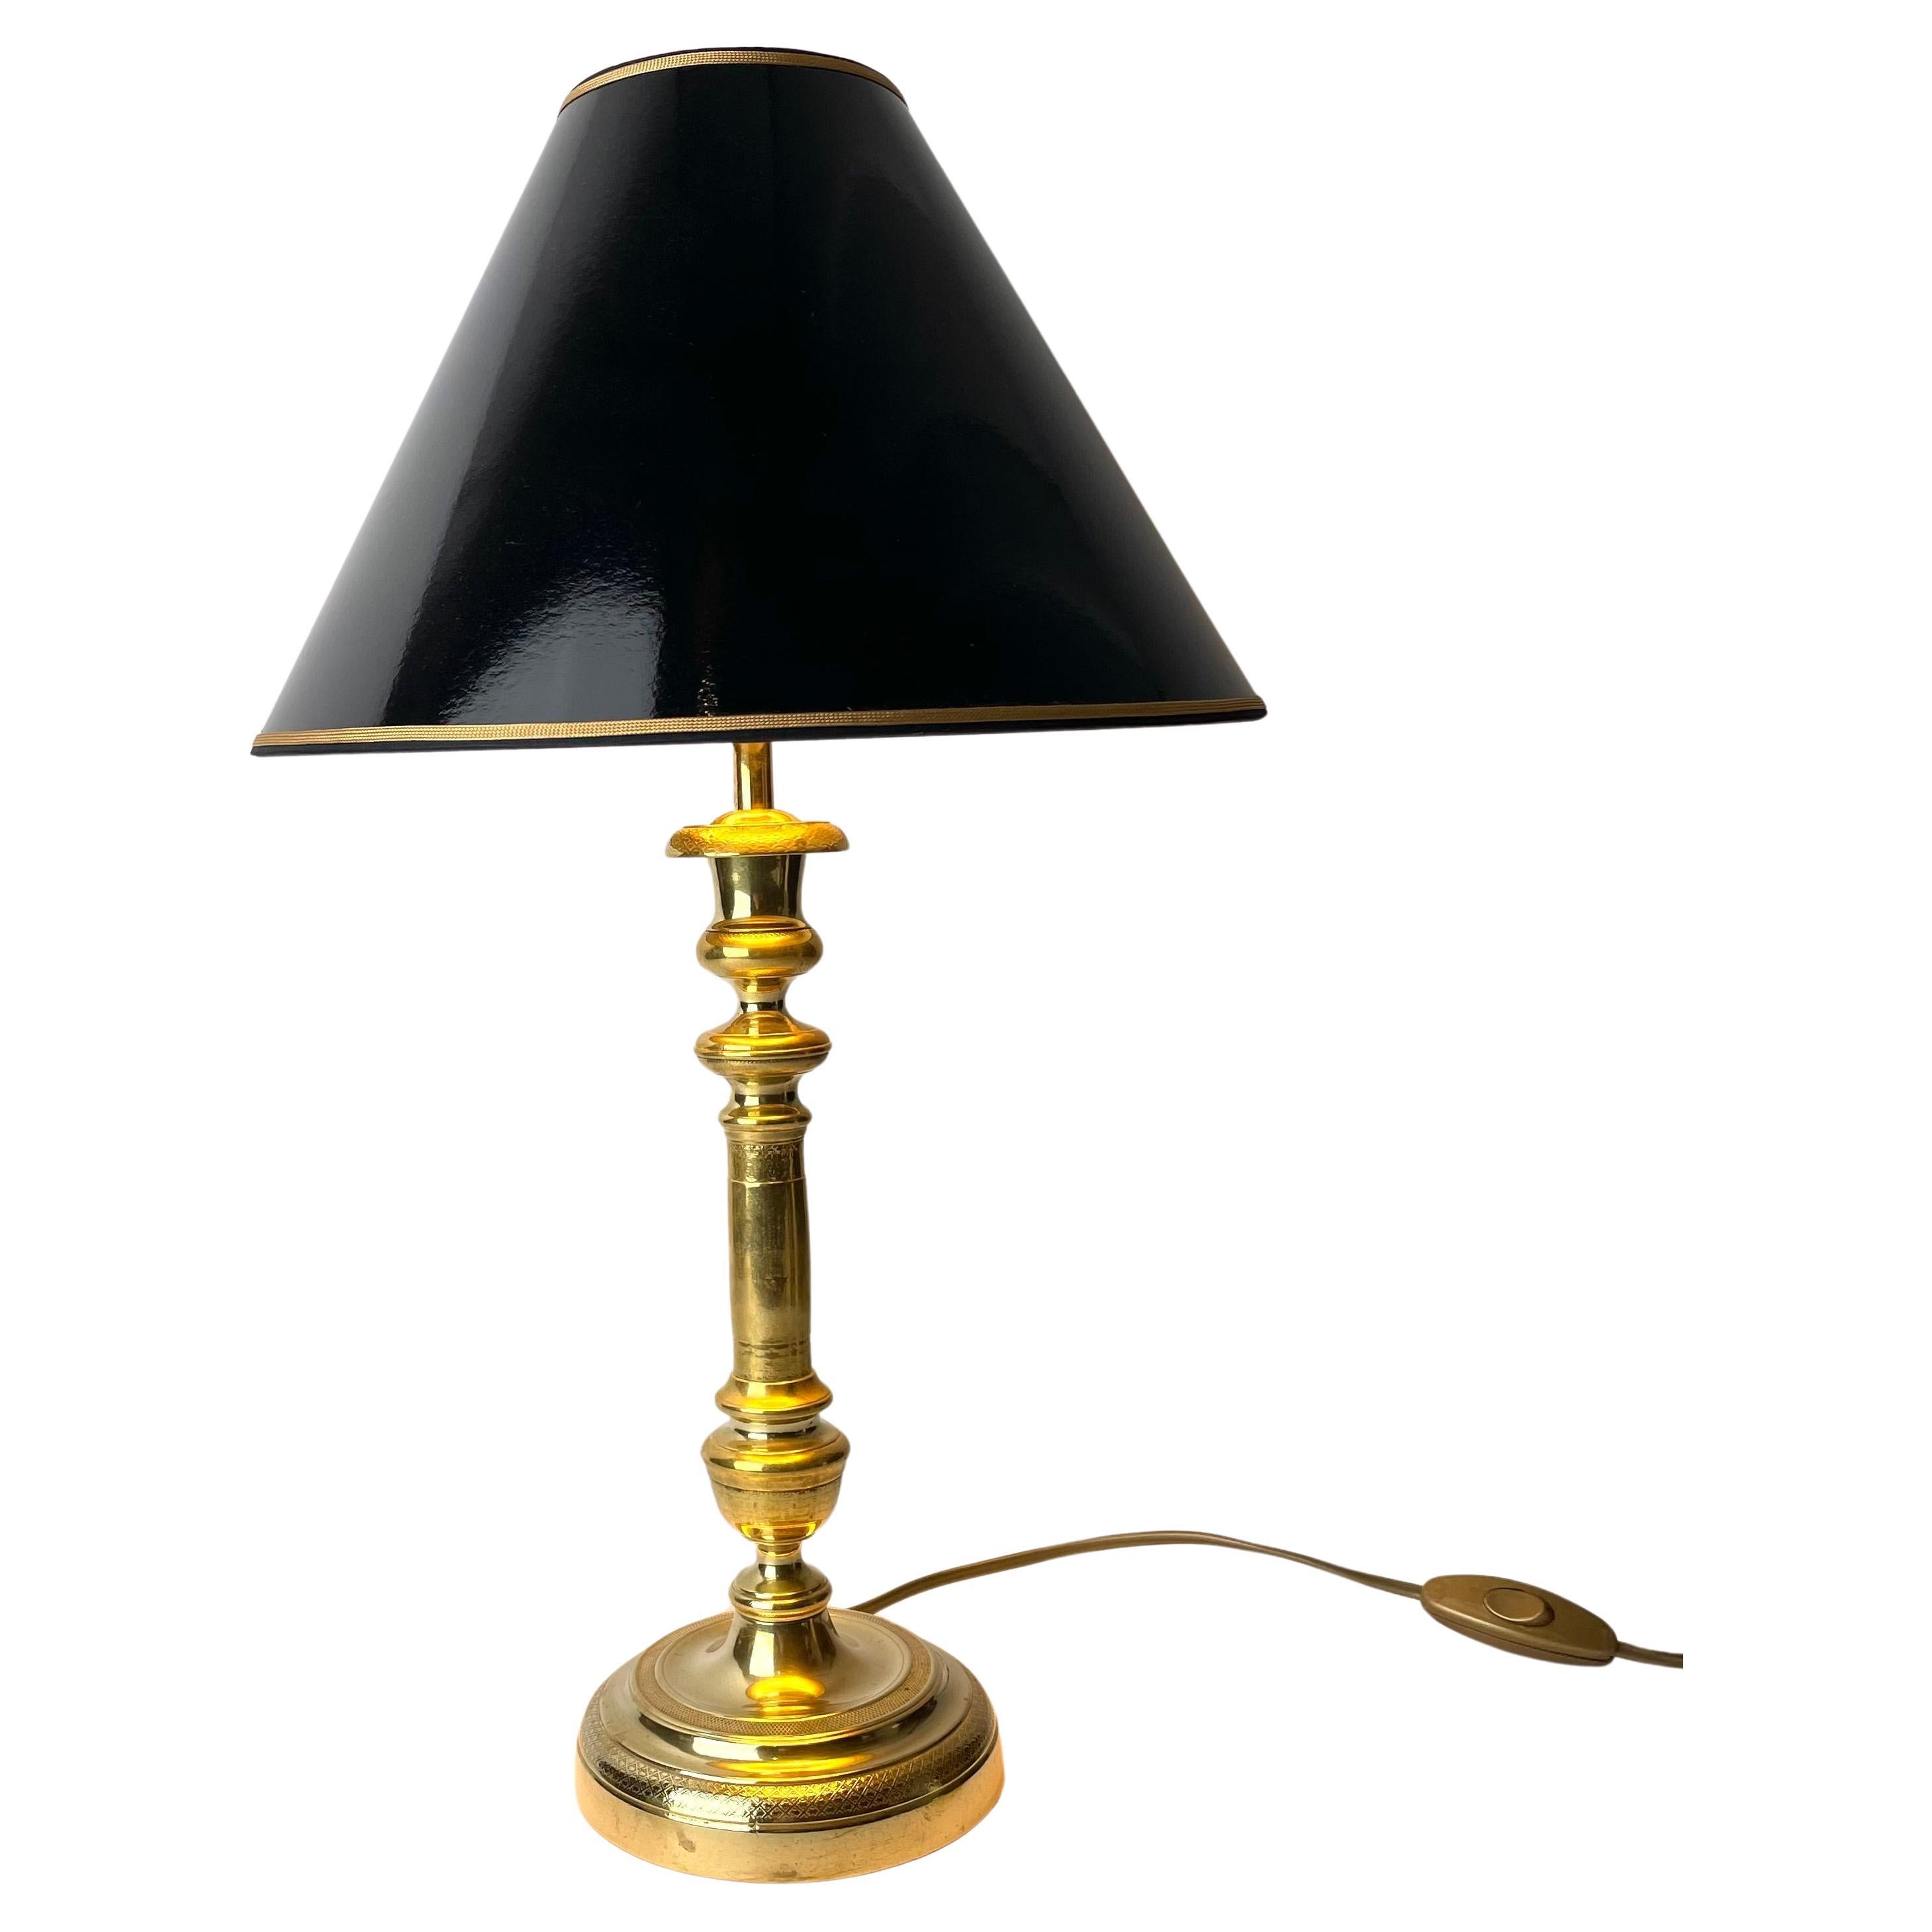 Schöne Tischlampe, ursprünglich ein Empire-Kerzenständer aus Bronze. Ab den 1820er Jahren